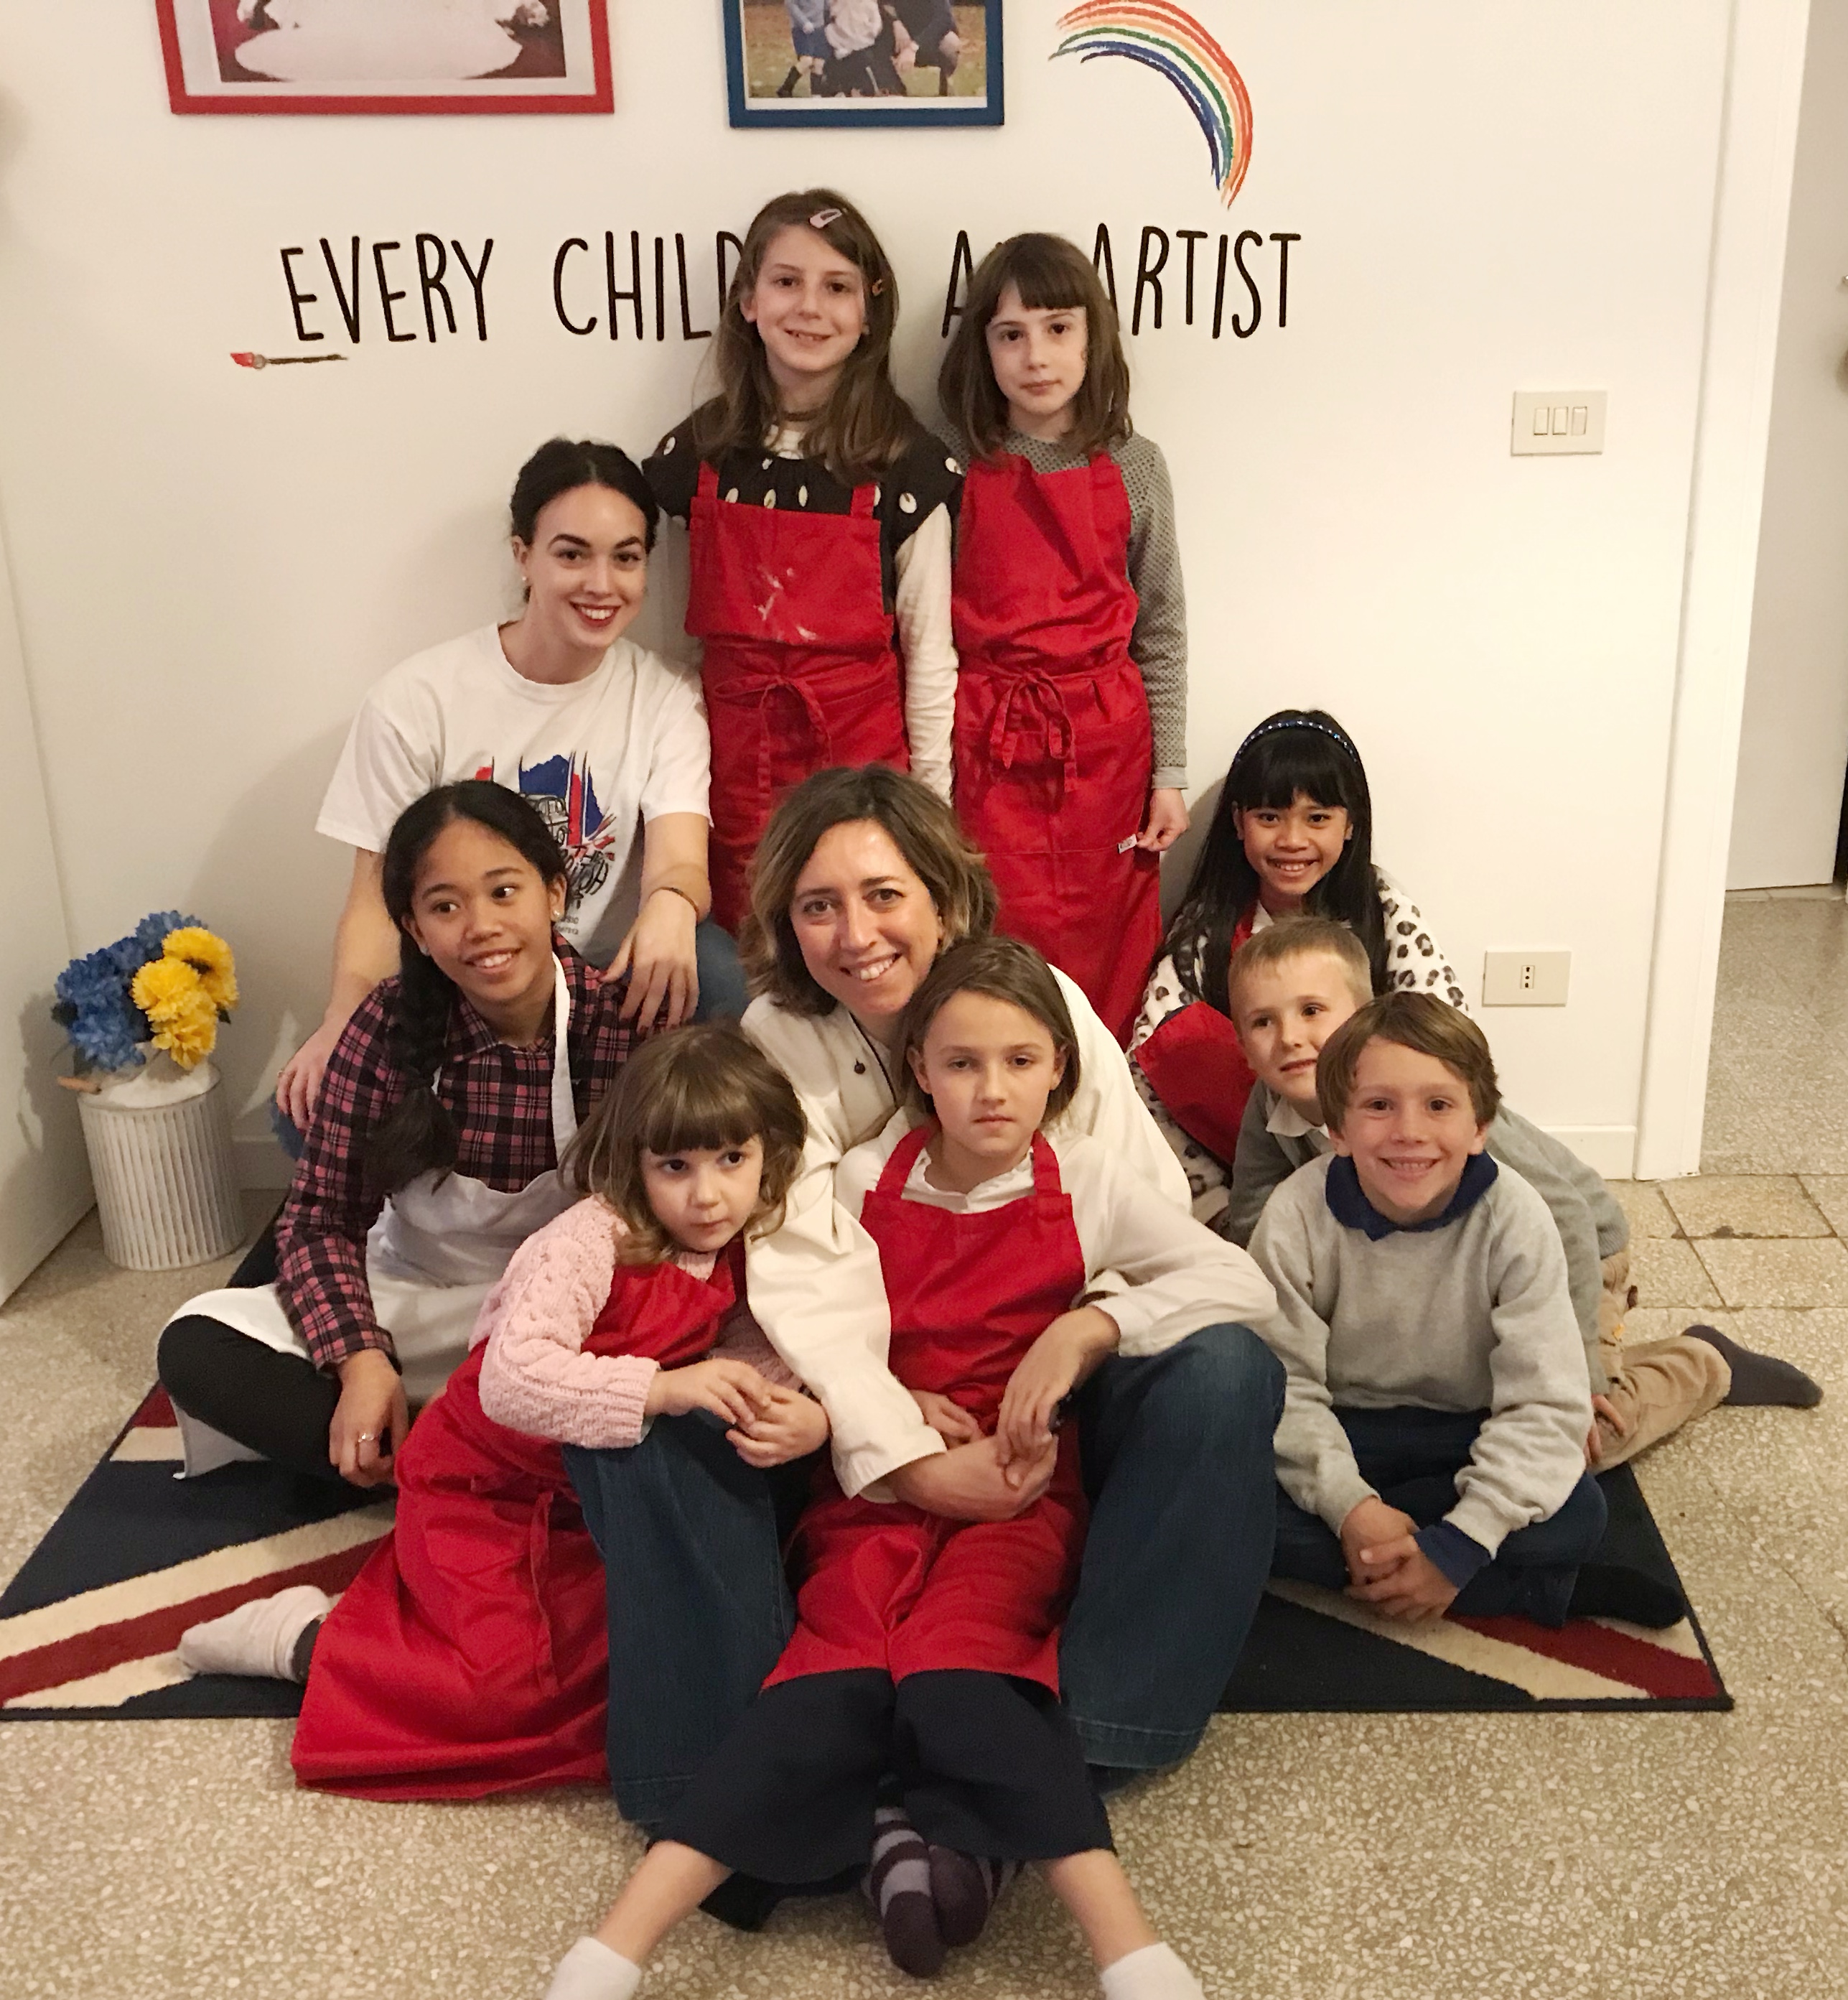 foto di gruppo di bambini con le chef clochard